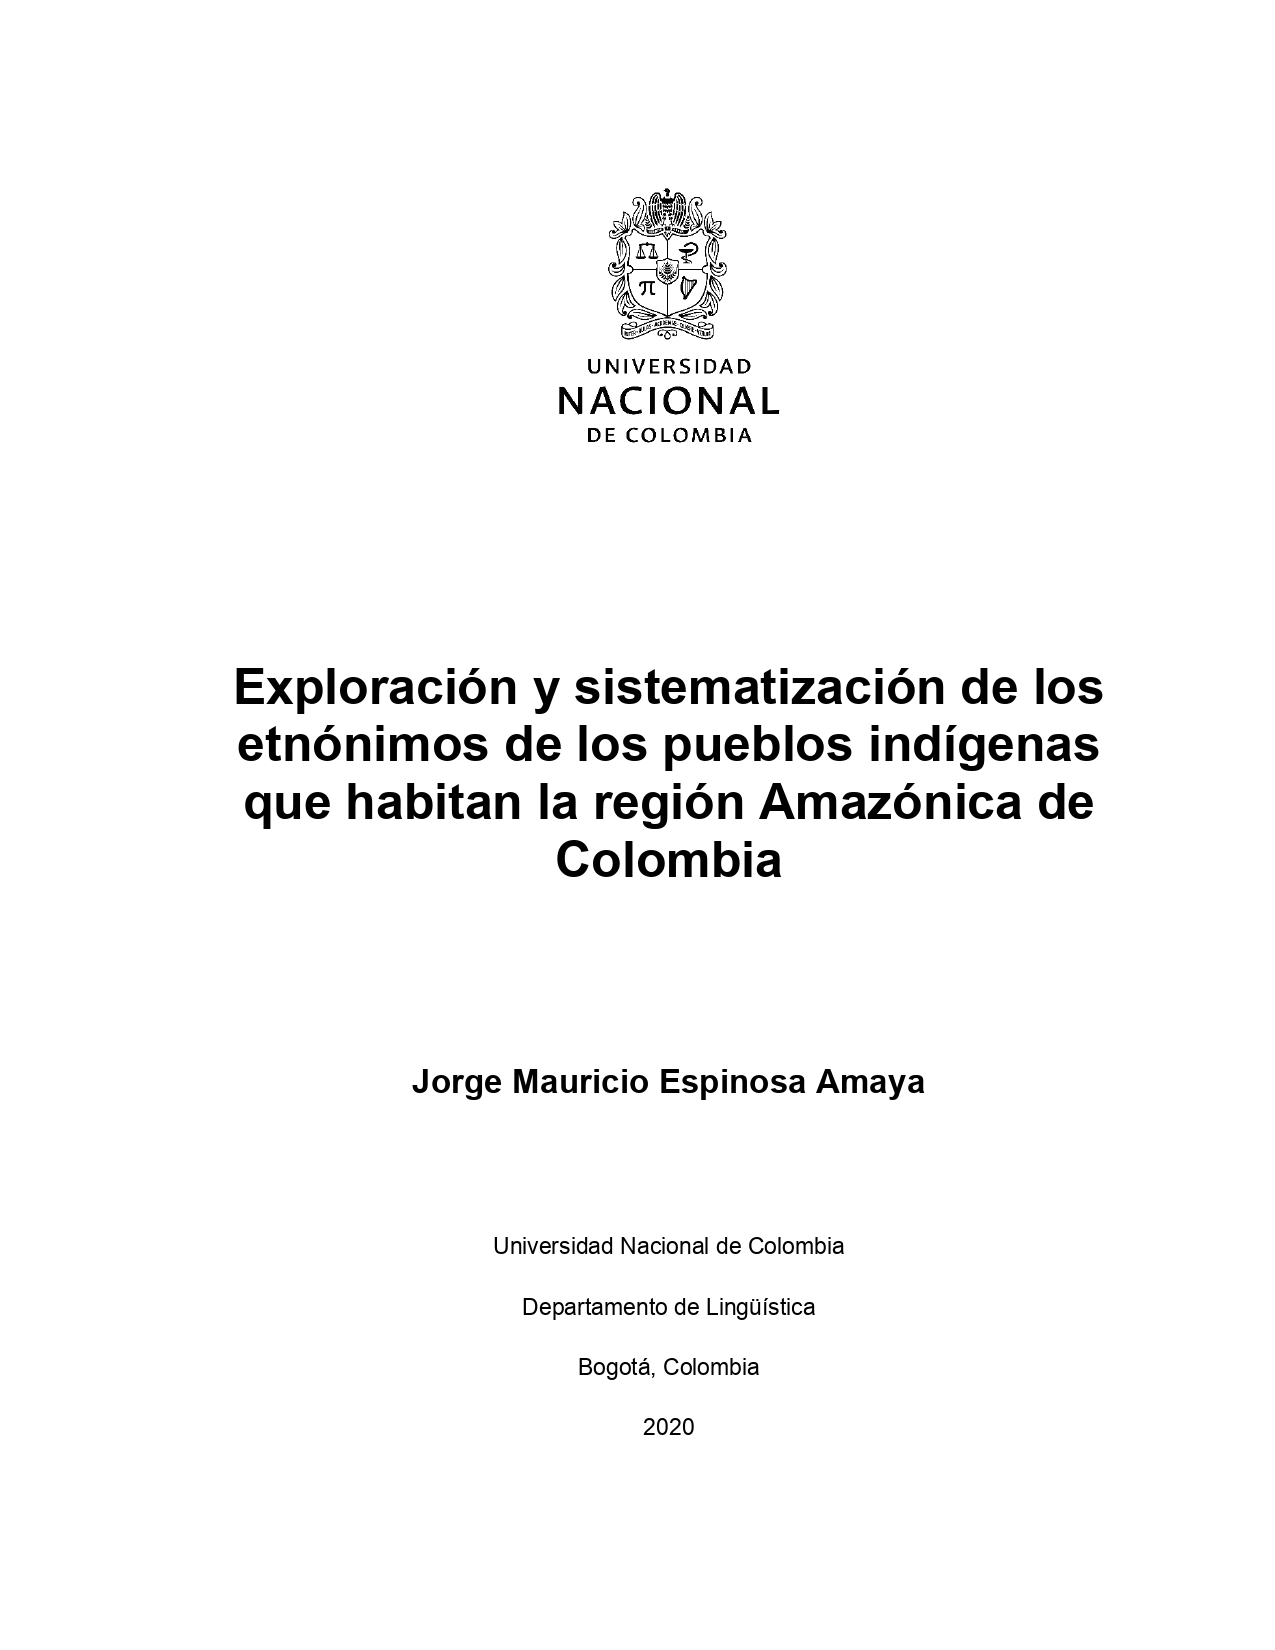 Exploración y sistematización de los etnónimos de los pueblos indígenas que habitan la región Amazónica de Colombia